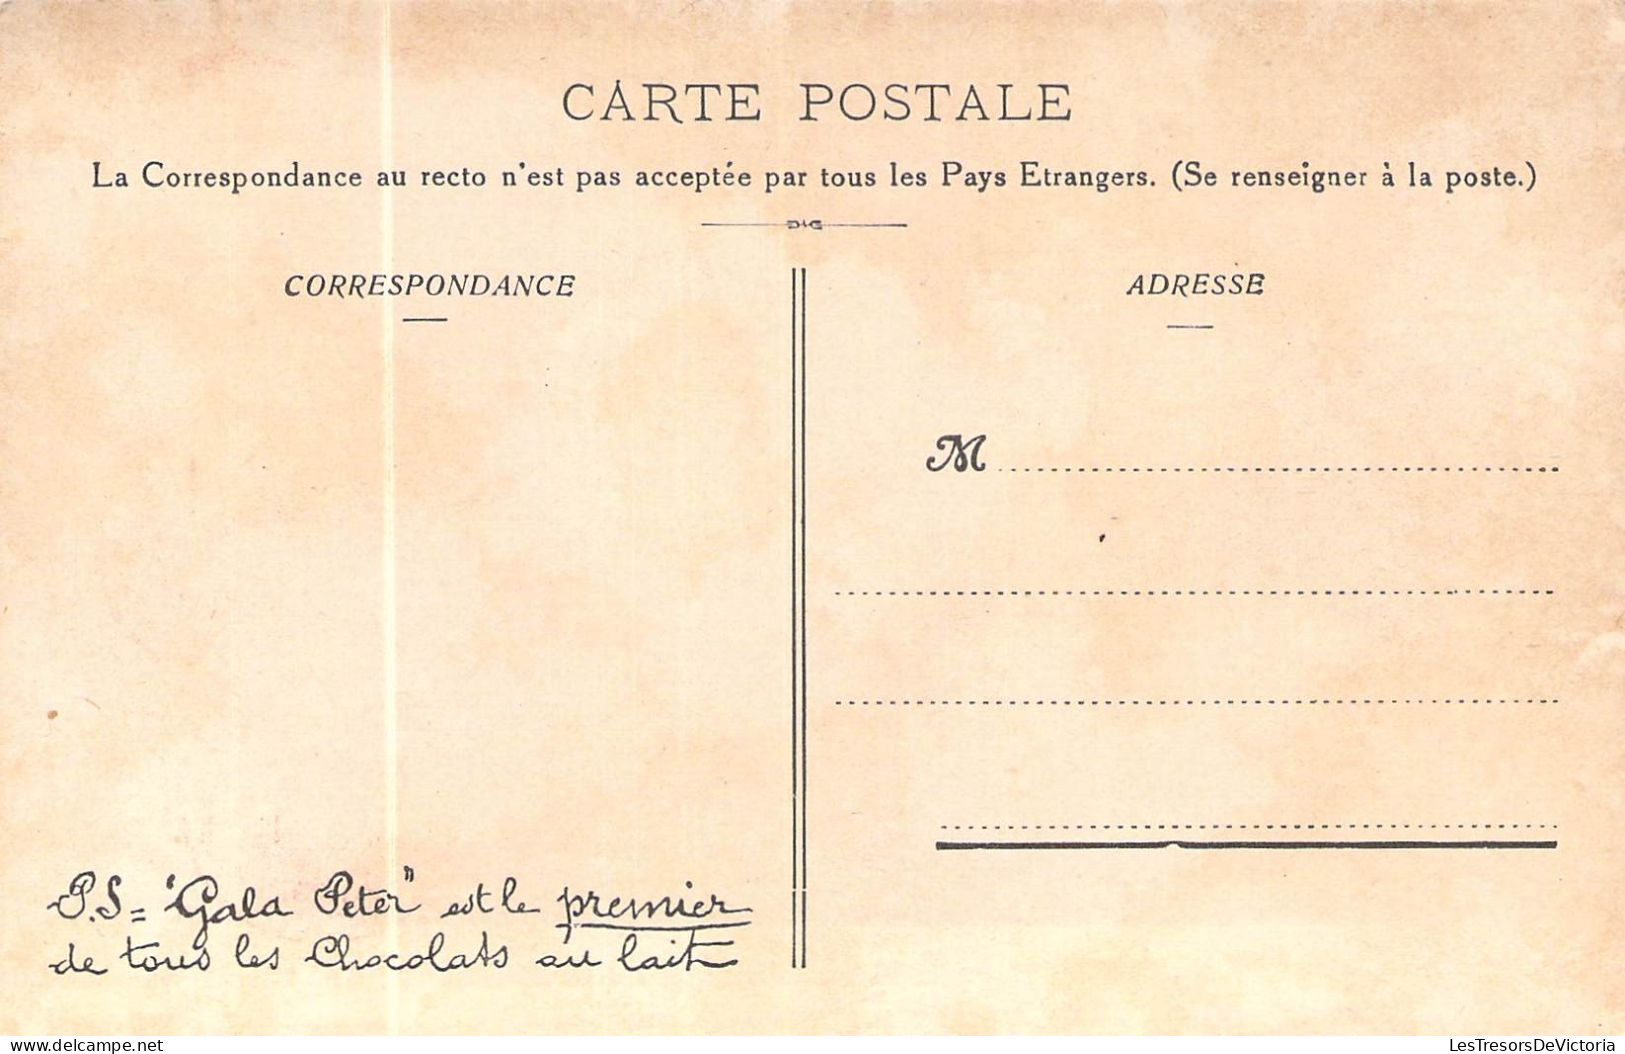 REGIONS - L'ARTOIS - Capitale Arras - Edition Gala Peter - Carte Postale Ancienne - Autres & Non Classés